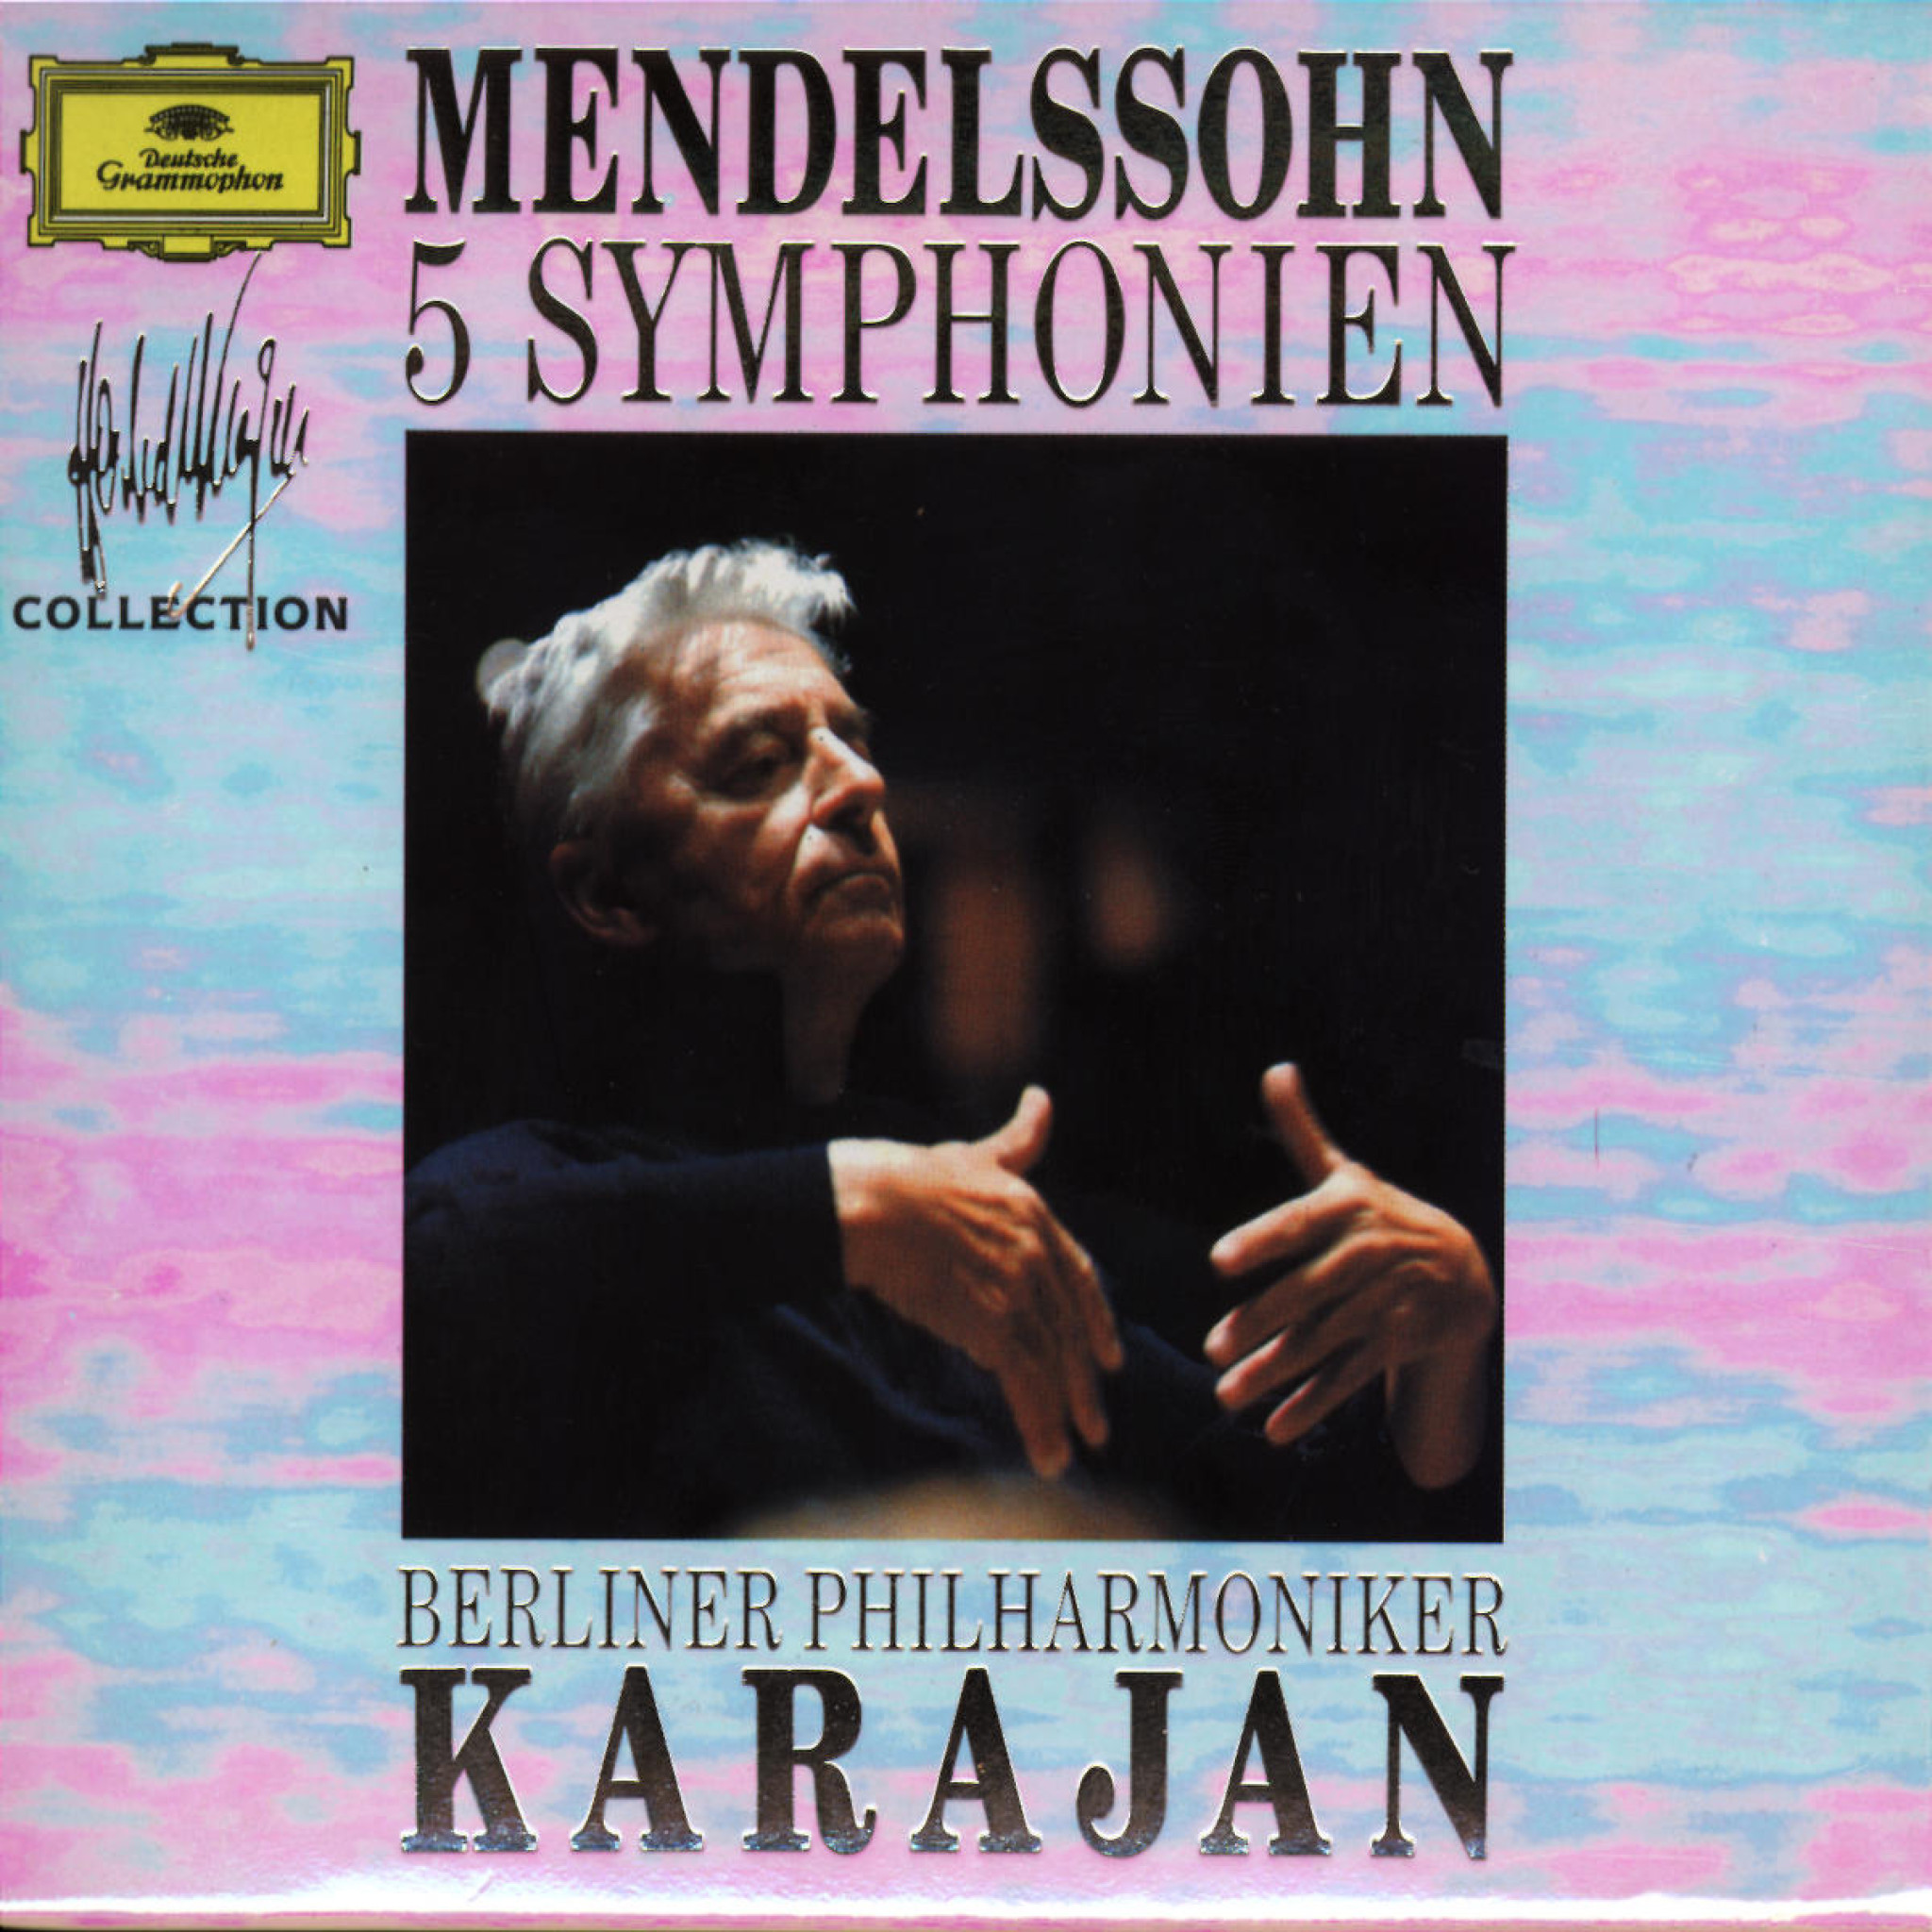 Felix Mendelssohn Bartholdy: 5 Symphonies 0028942966428